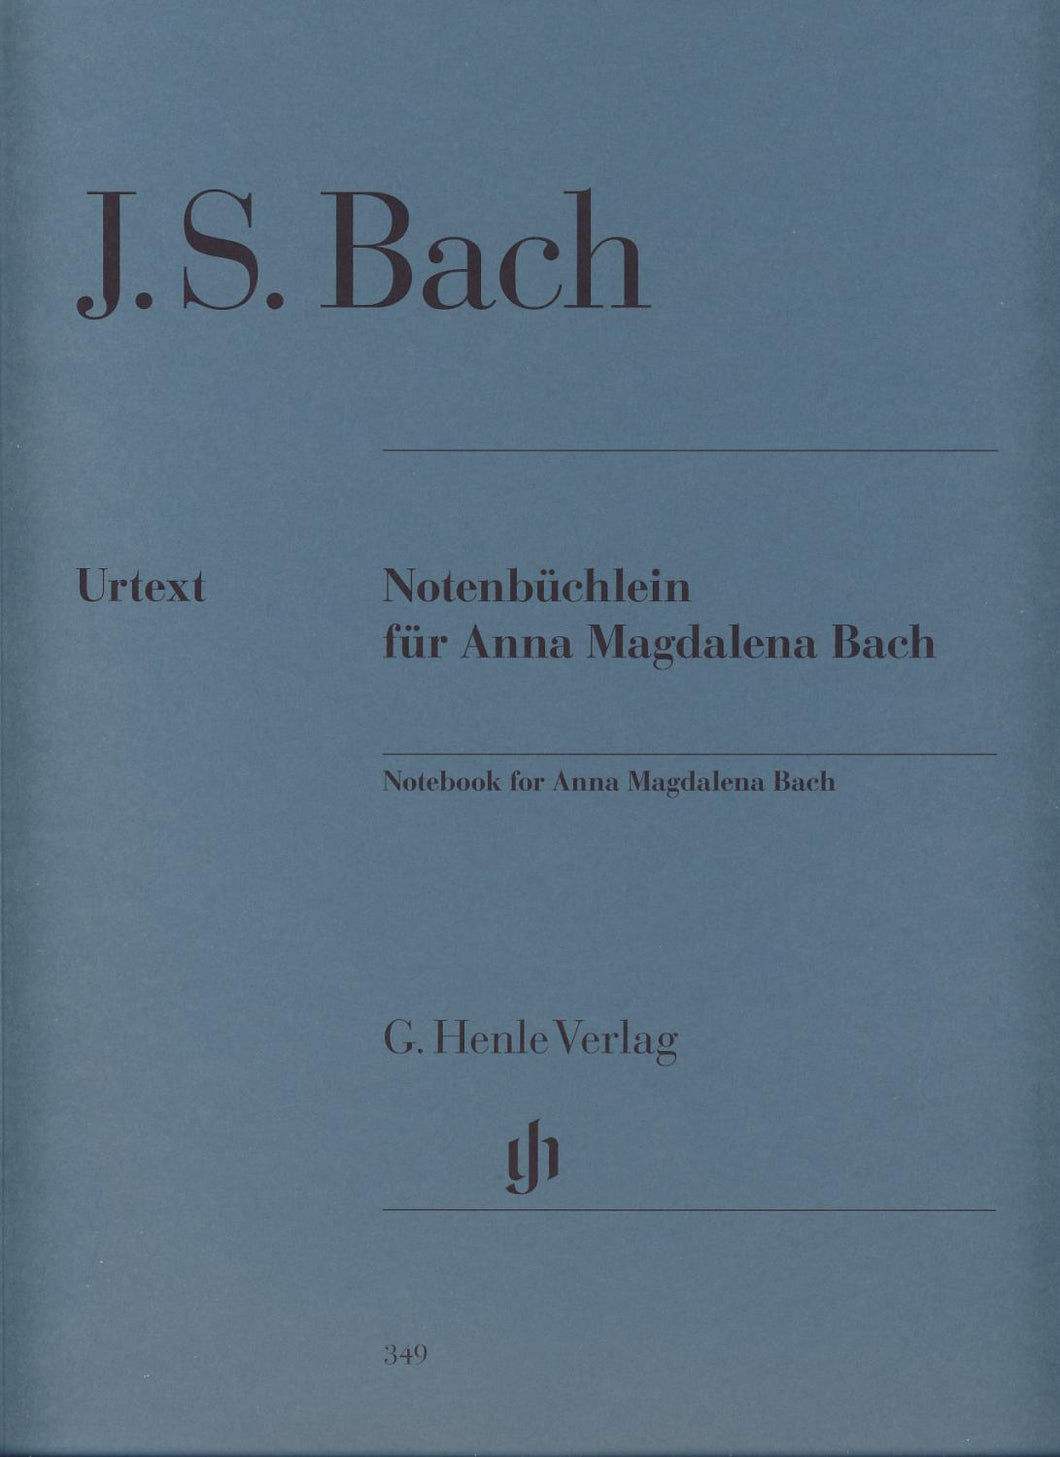 JOHANN SEBASTIAN BACH: Notebook for Anna Magdalena Bach